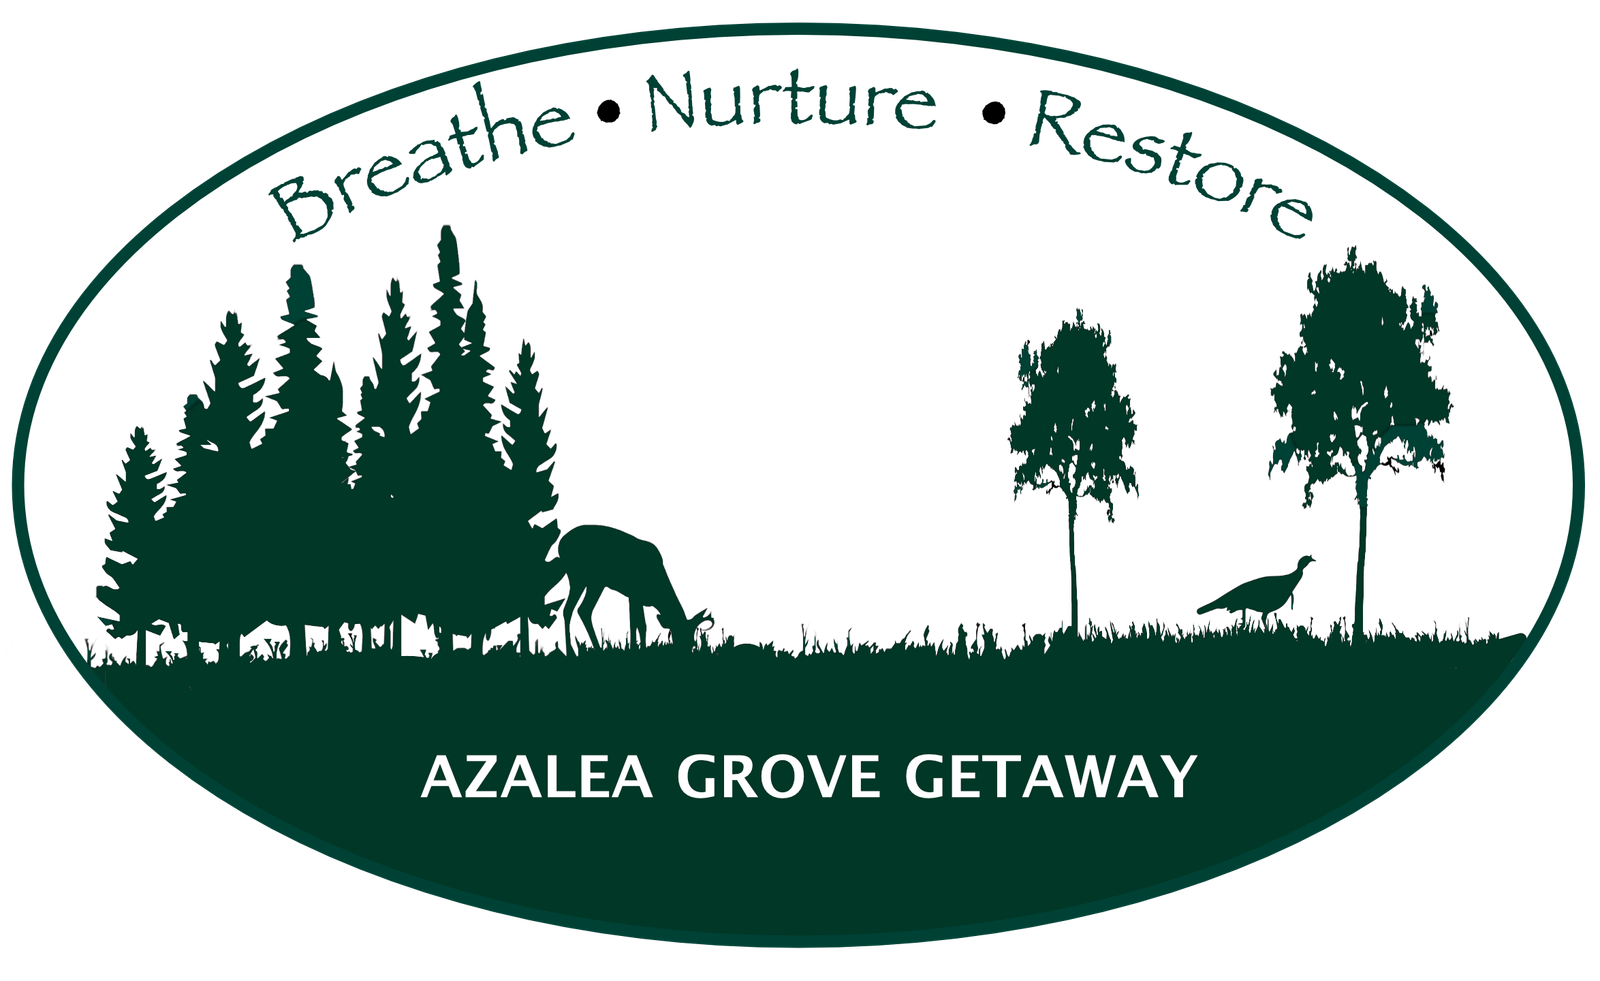 Azalea Grove Getaway Logo: Beathe, Nurture, Restore